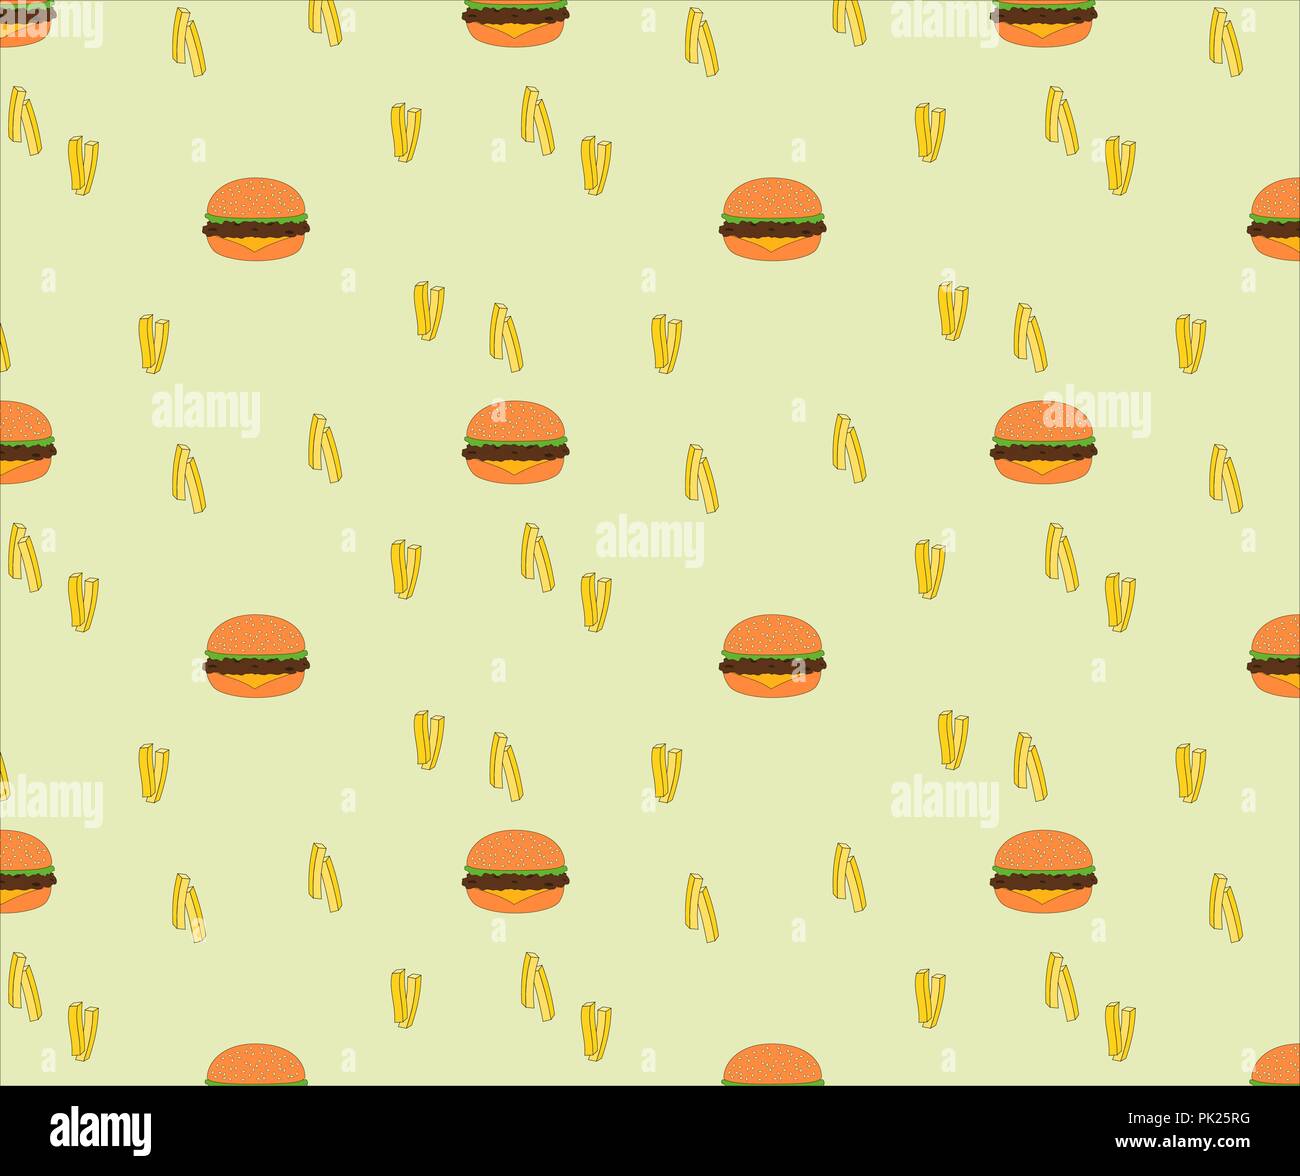 Schöne nahtlose Lecker fast food cheese Burger und Pommes frites Muster Hintergrund Stock Vektor